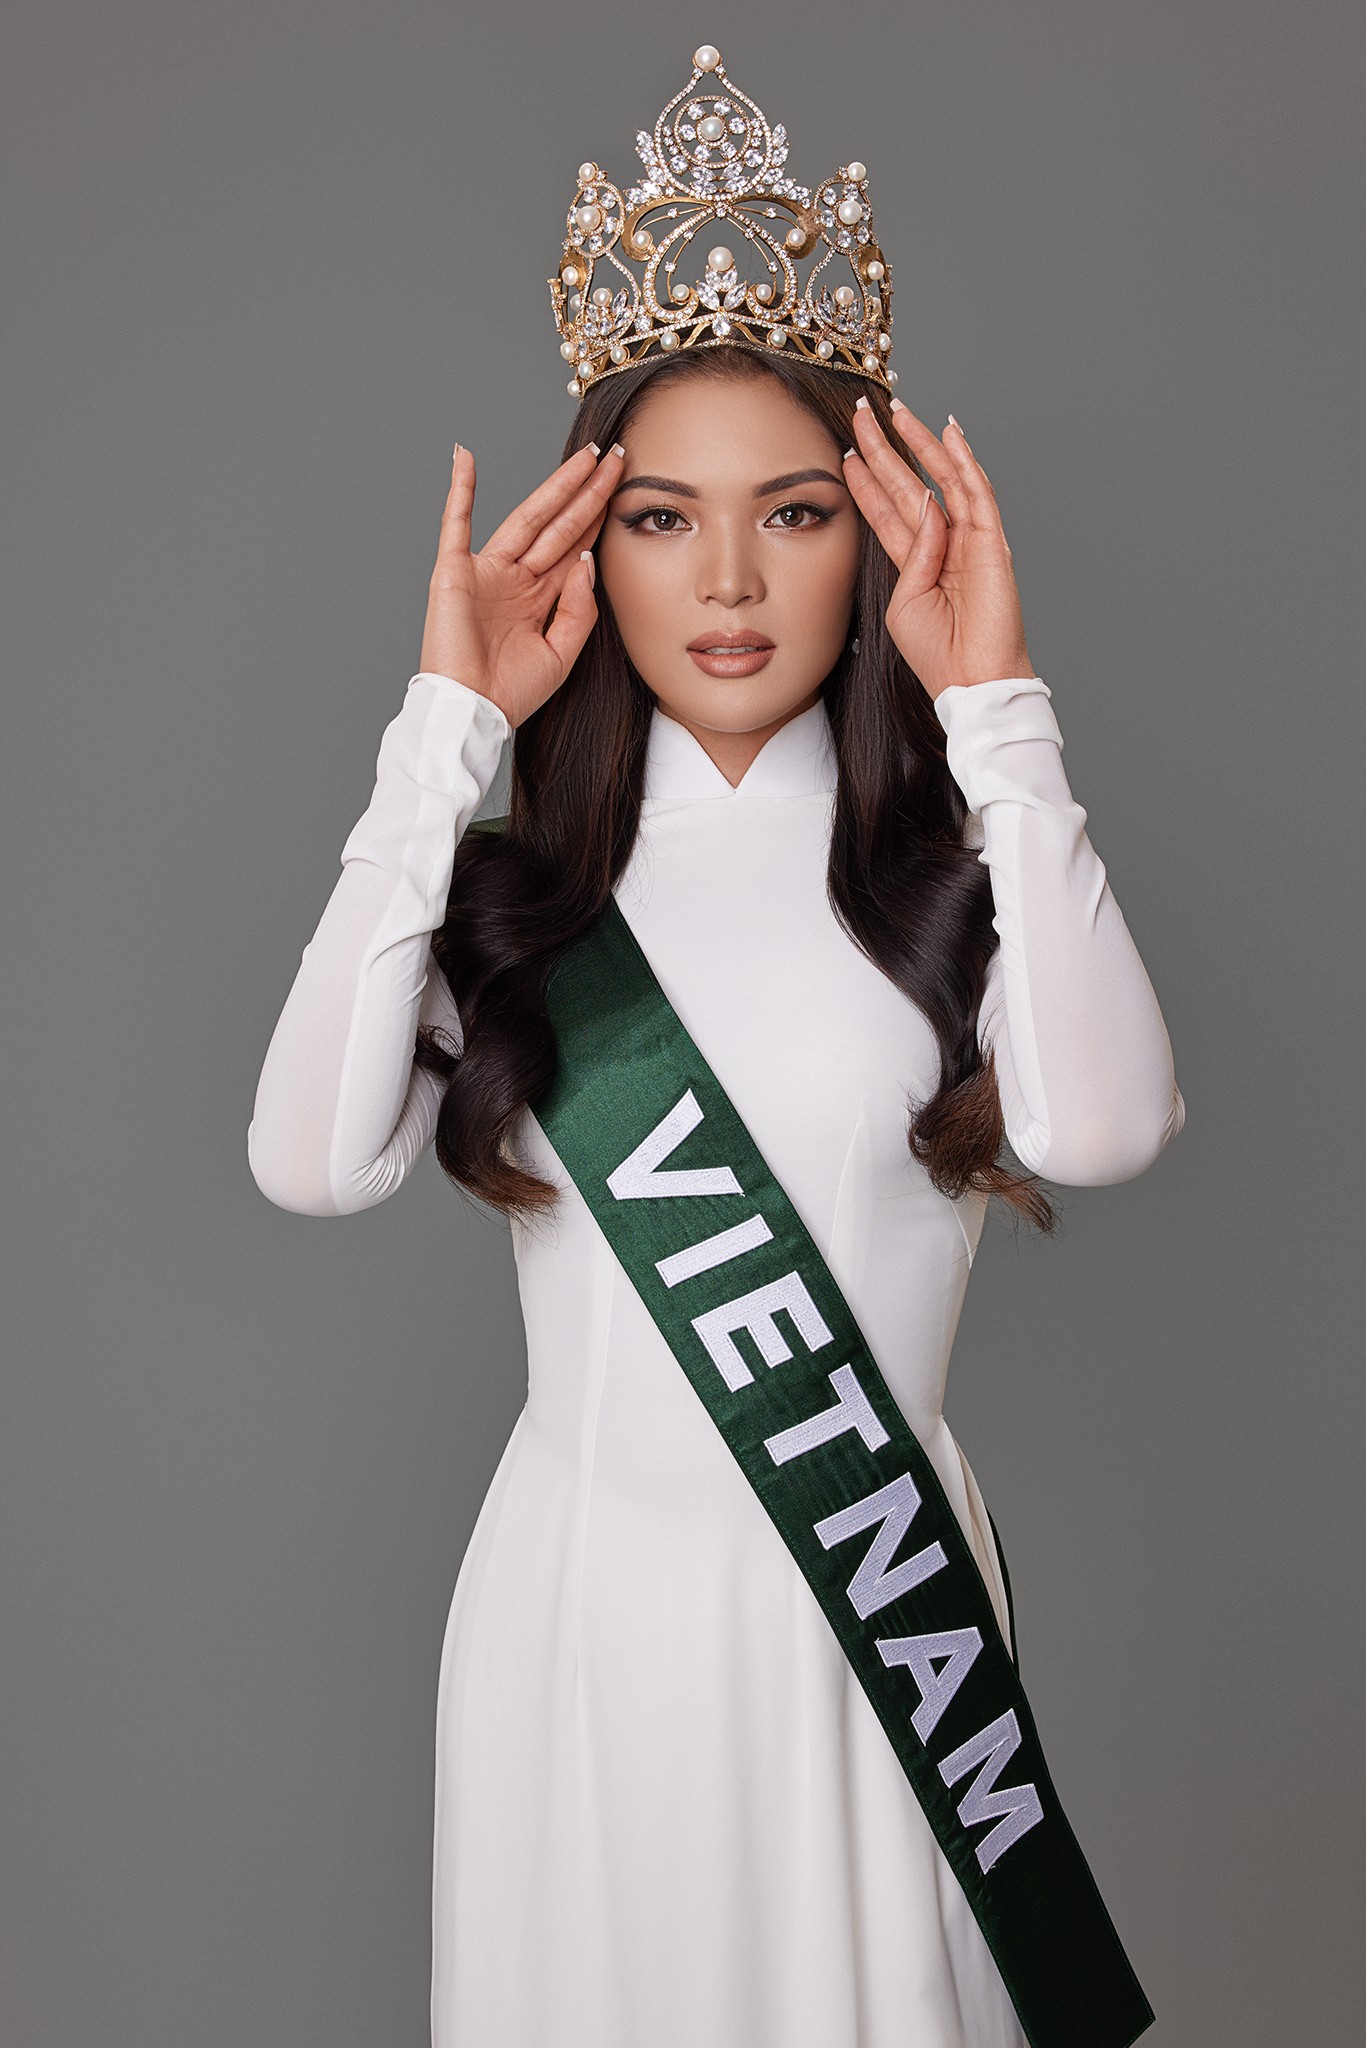 Vì sao người đẹp Vân Anh được lựa chọn dự thi Miss Earth 2021? - Ảnh 1.